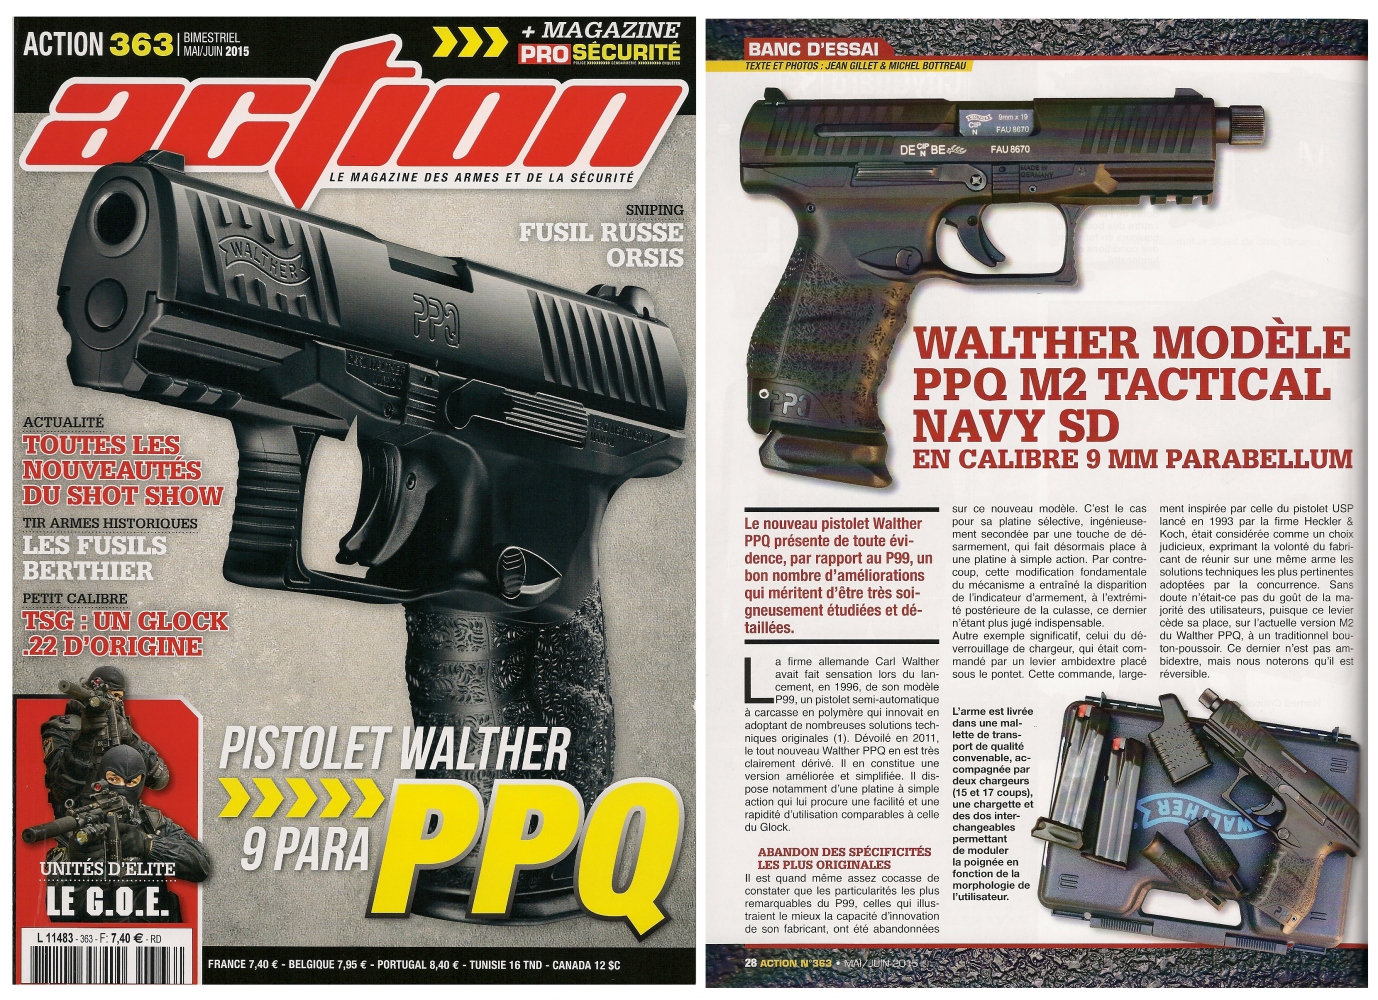 Le banc d’essai du Walther PPQ M2 Tactical Navy SD a été publié sur 6 pages dans le magazine Action n°363 (mai/juin 2015).